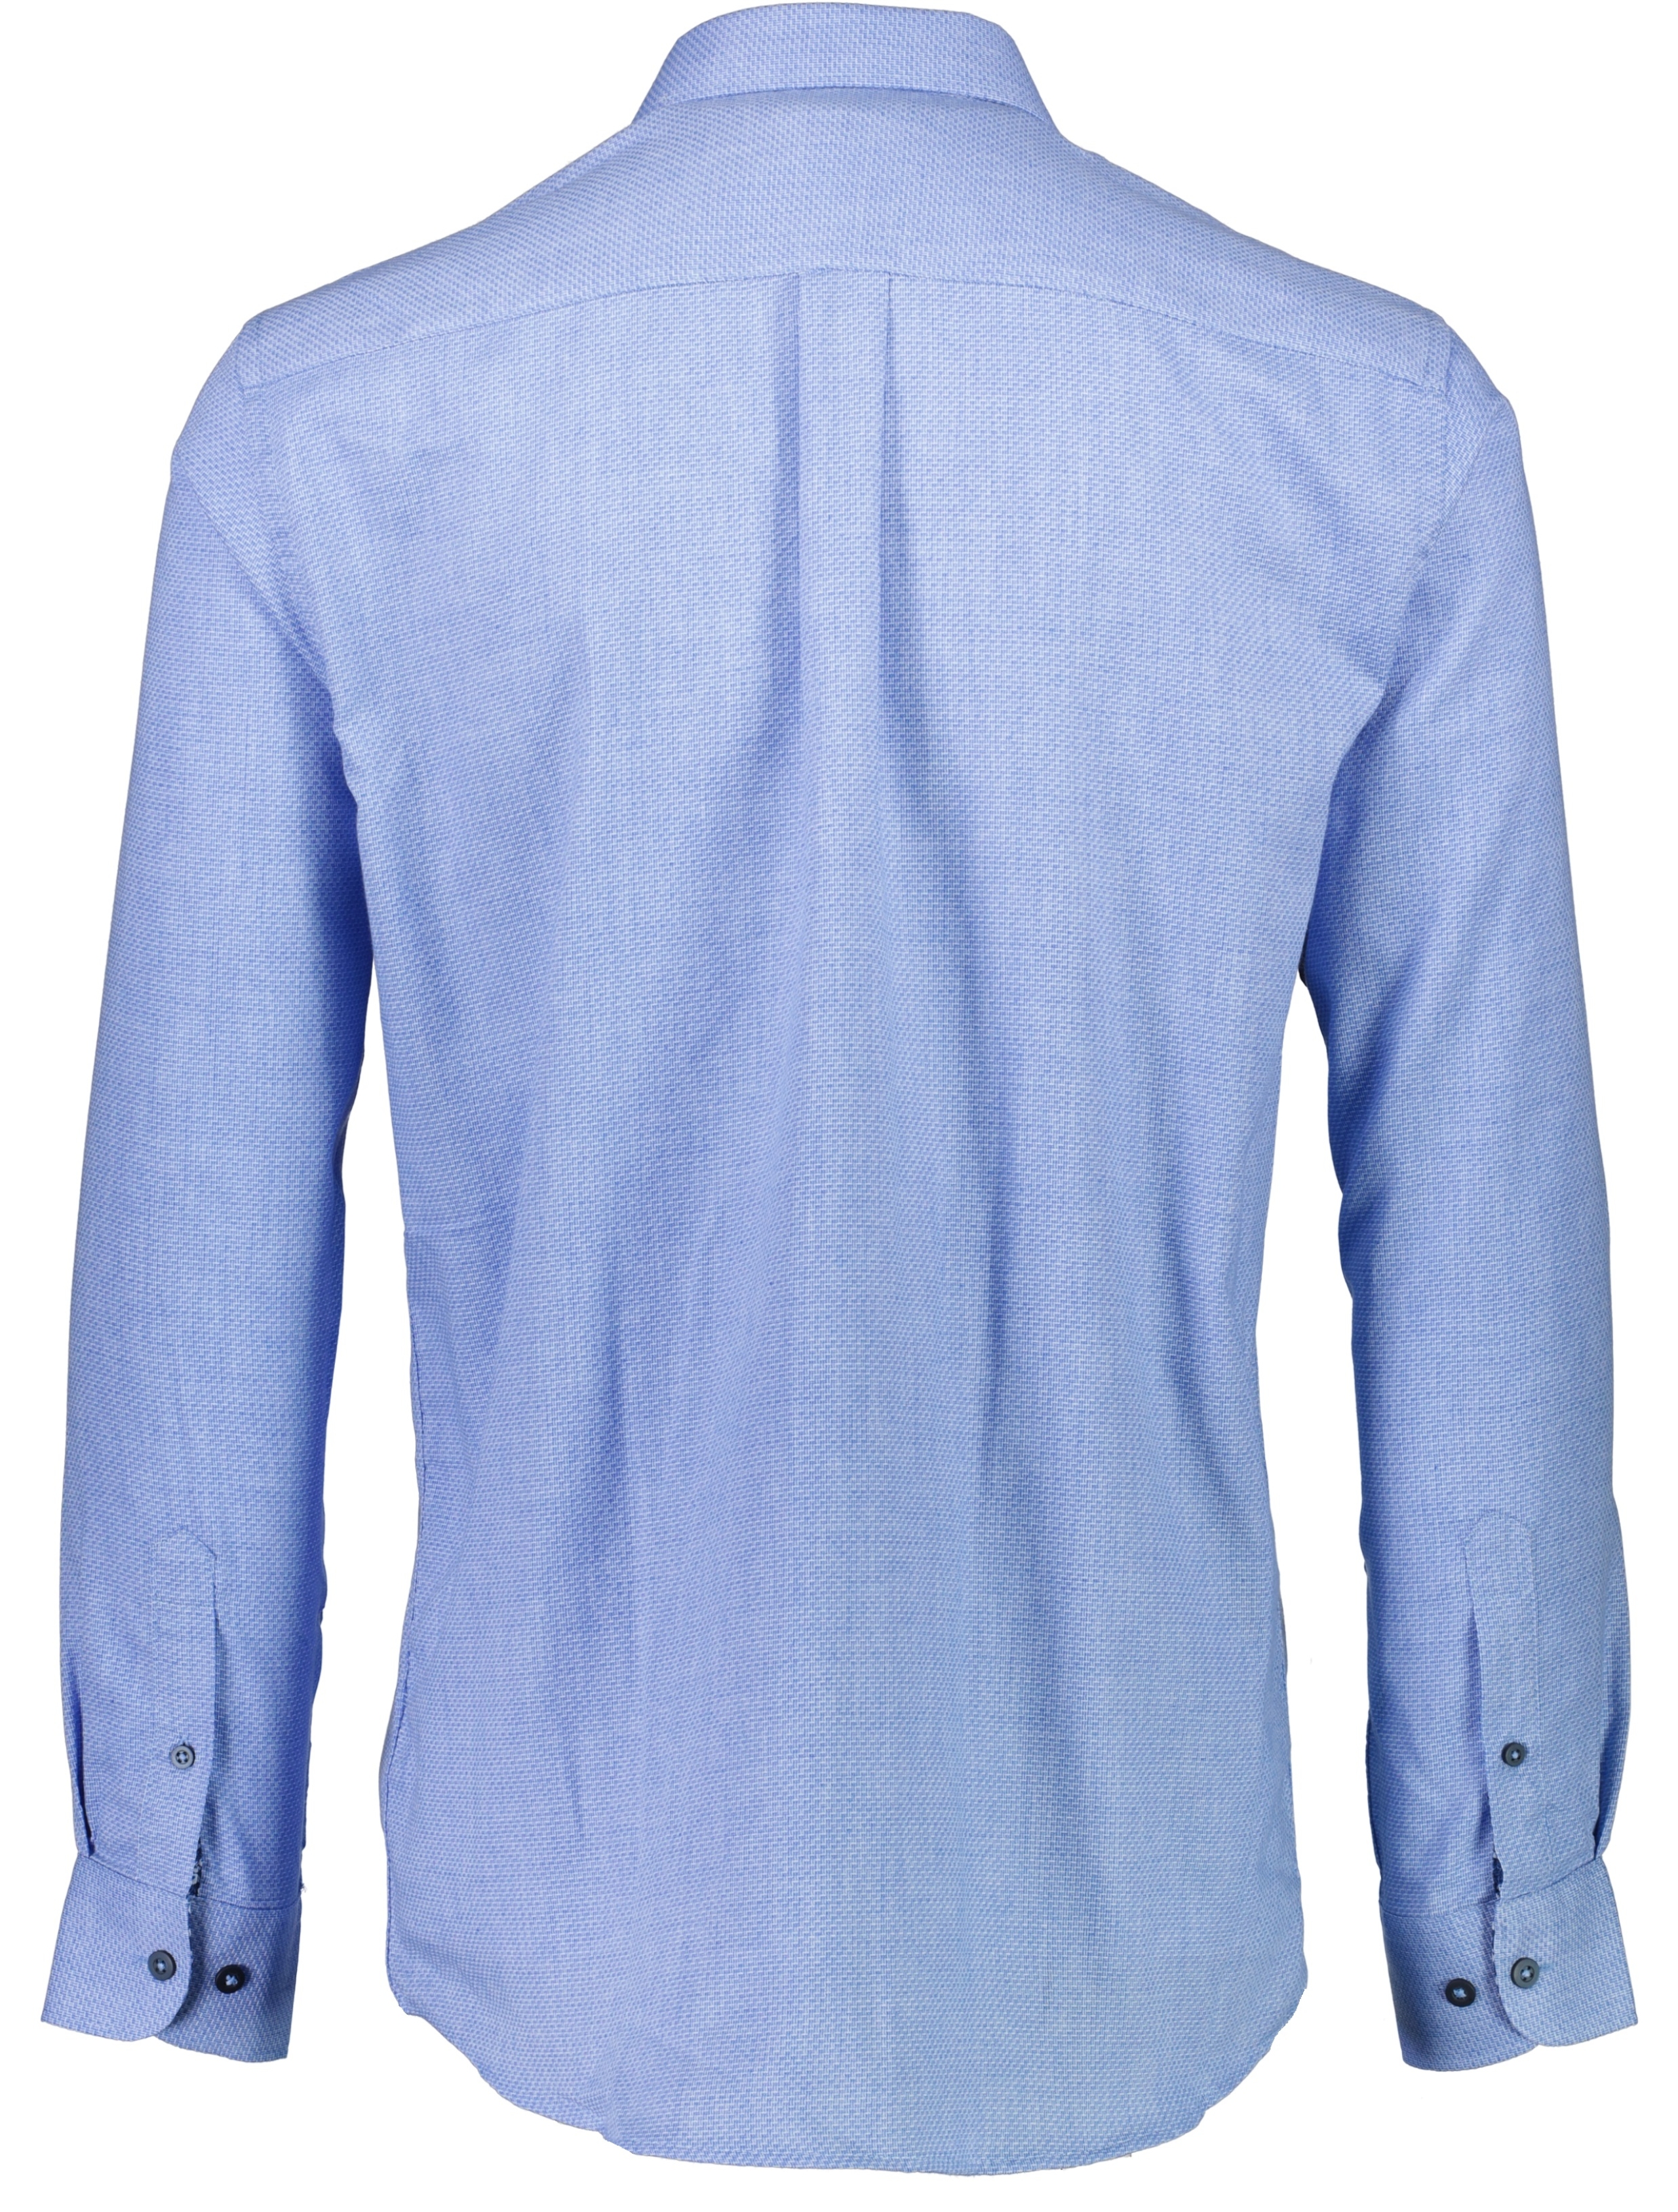 Jack's Casual skjorte blå / light blue